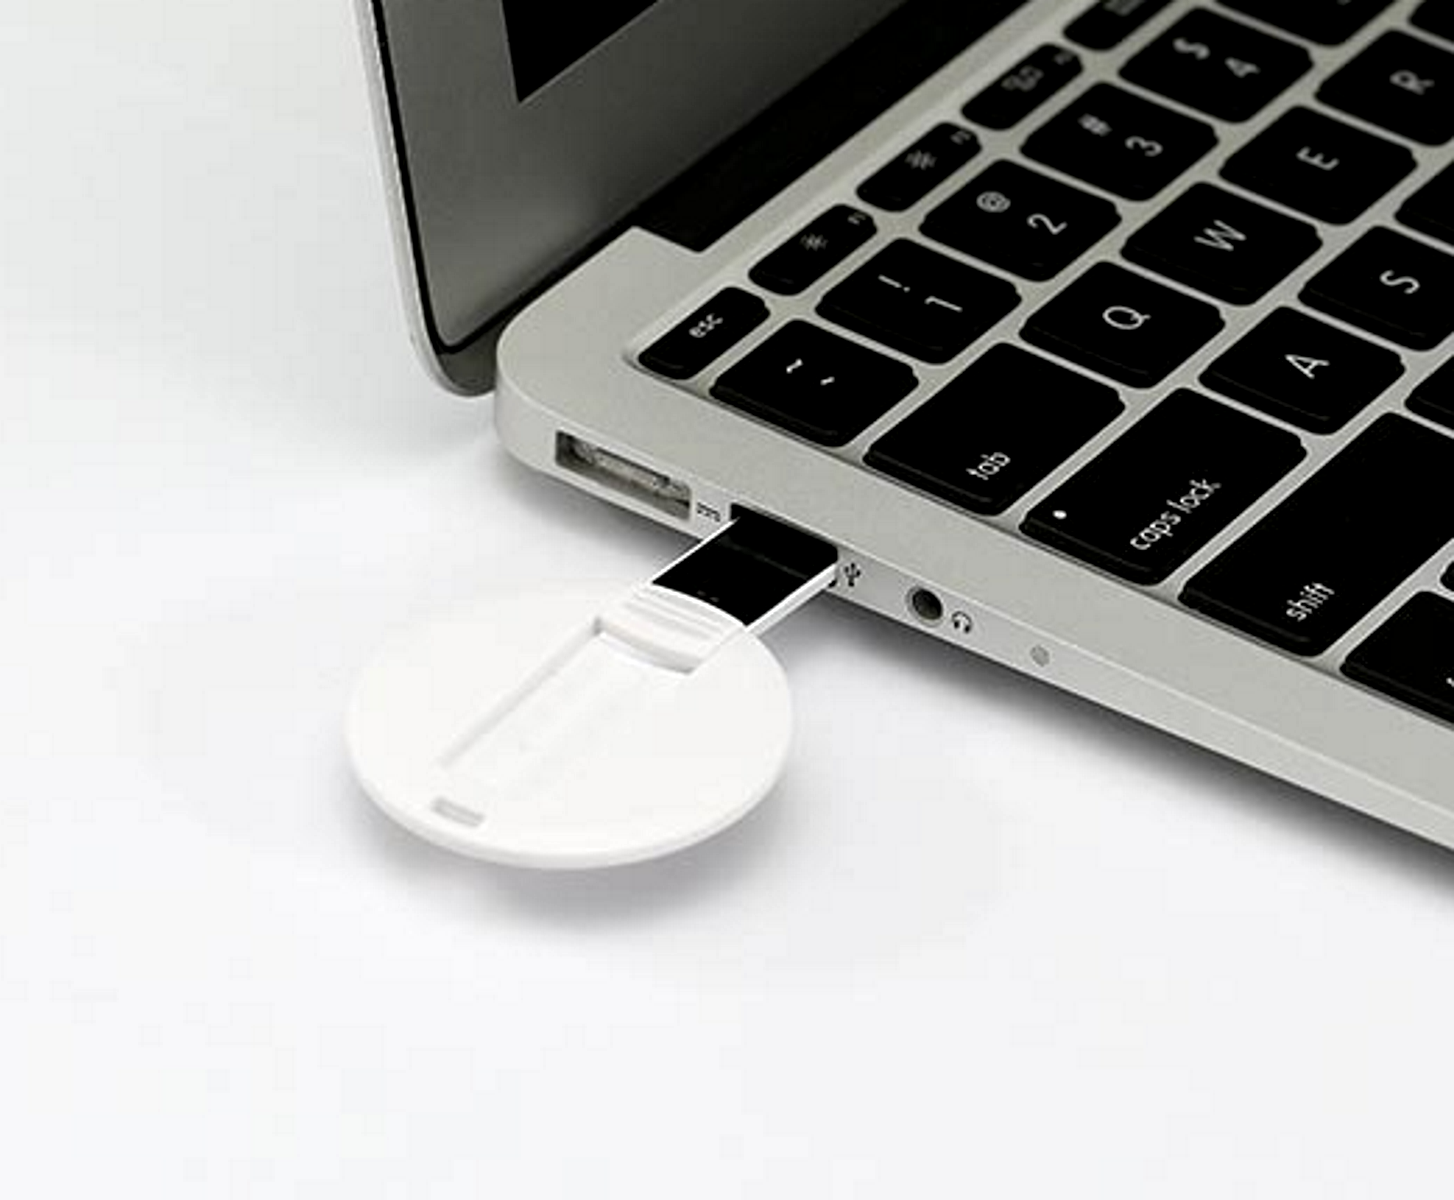 USB GERMANY USB-Stick (Weiß, 64 DISC GB) ®